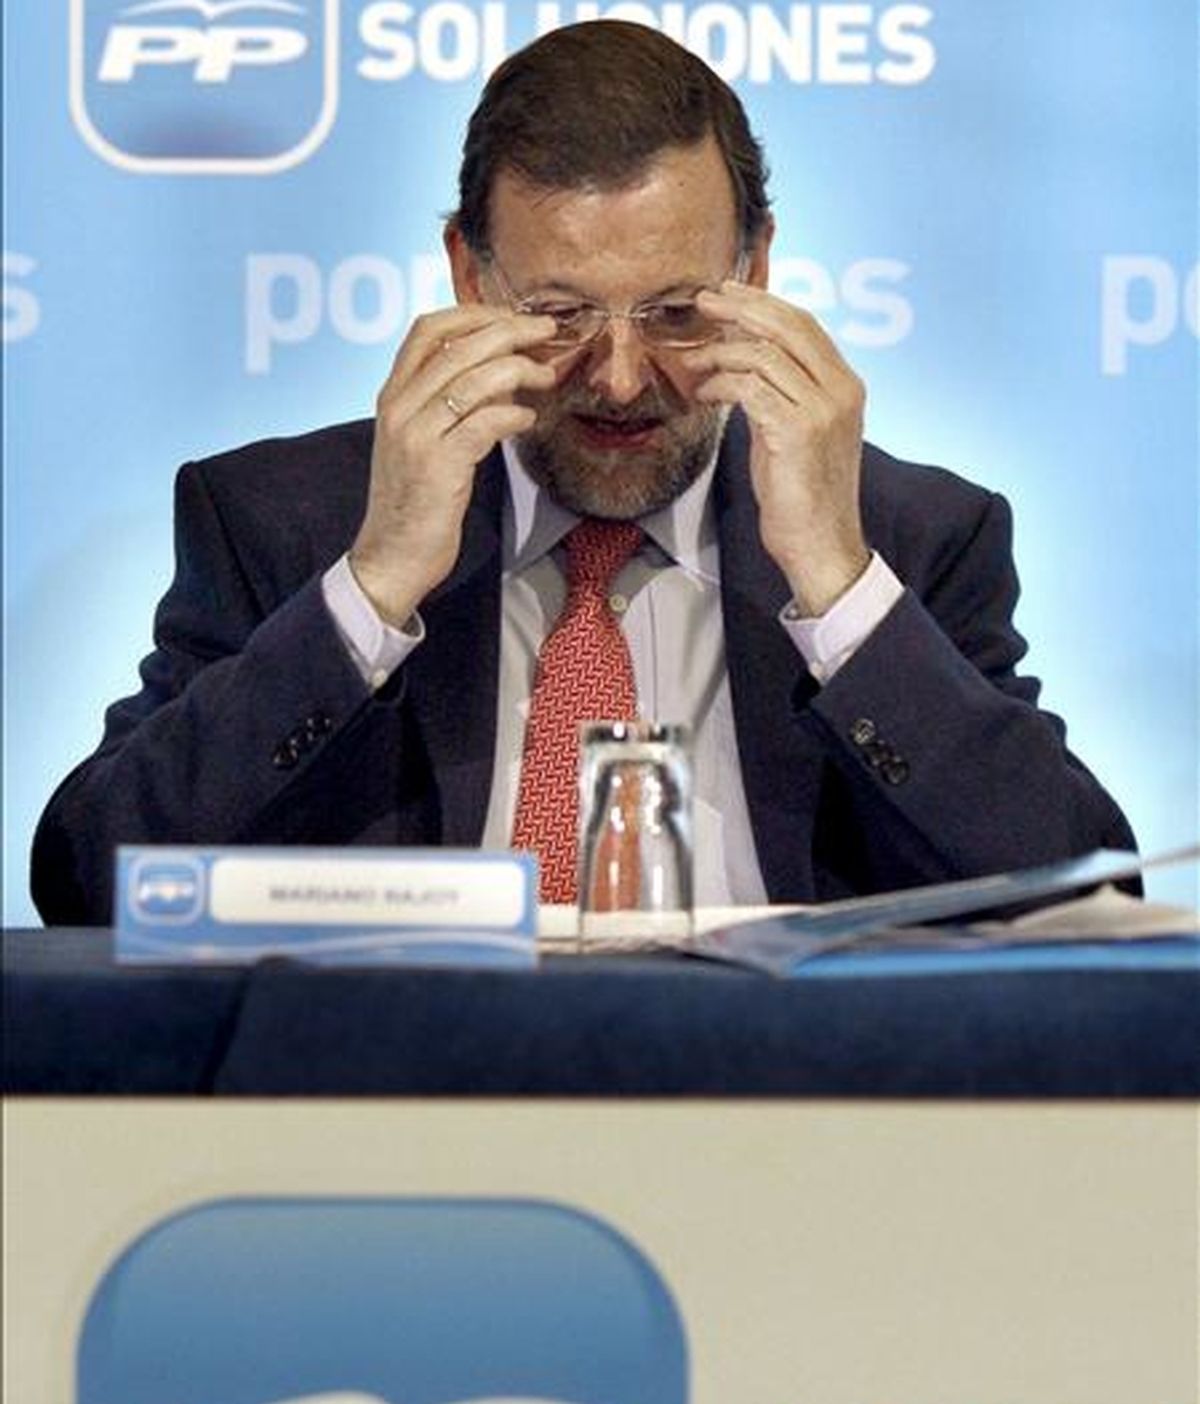 El presidente del Partido Popular, Mariano Rajoy, durante la clausura hoy en Barcelona, de unas jornadas a las que asisten los presidentes provinciales e insulares del partido. EFE